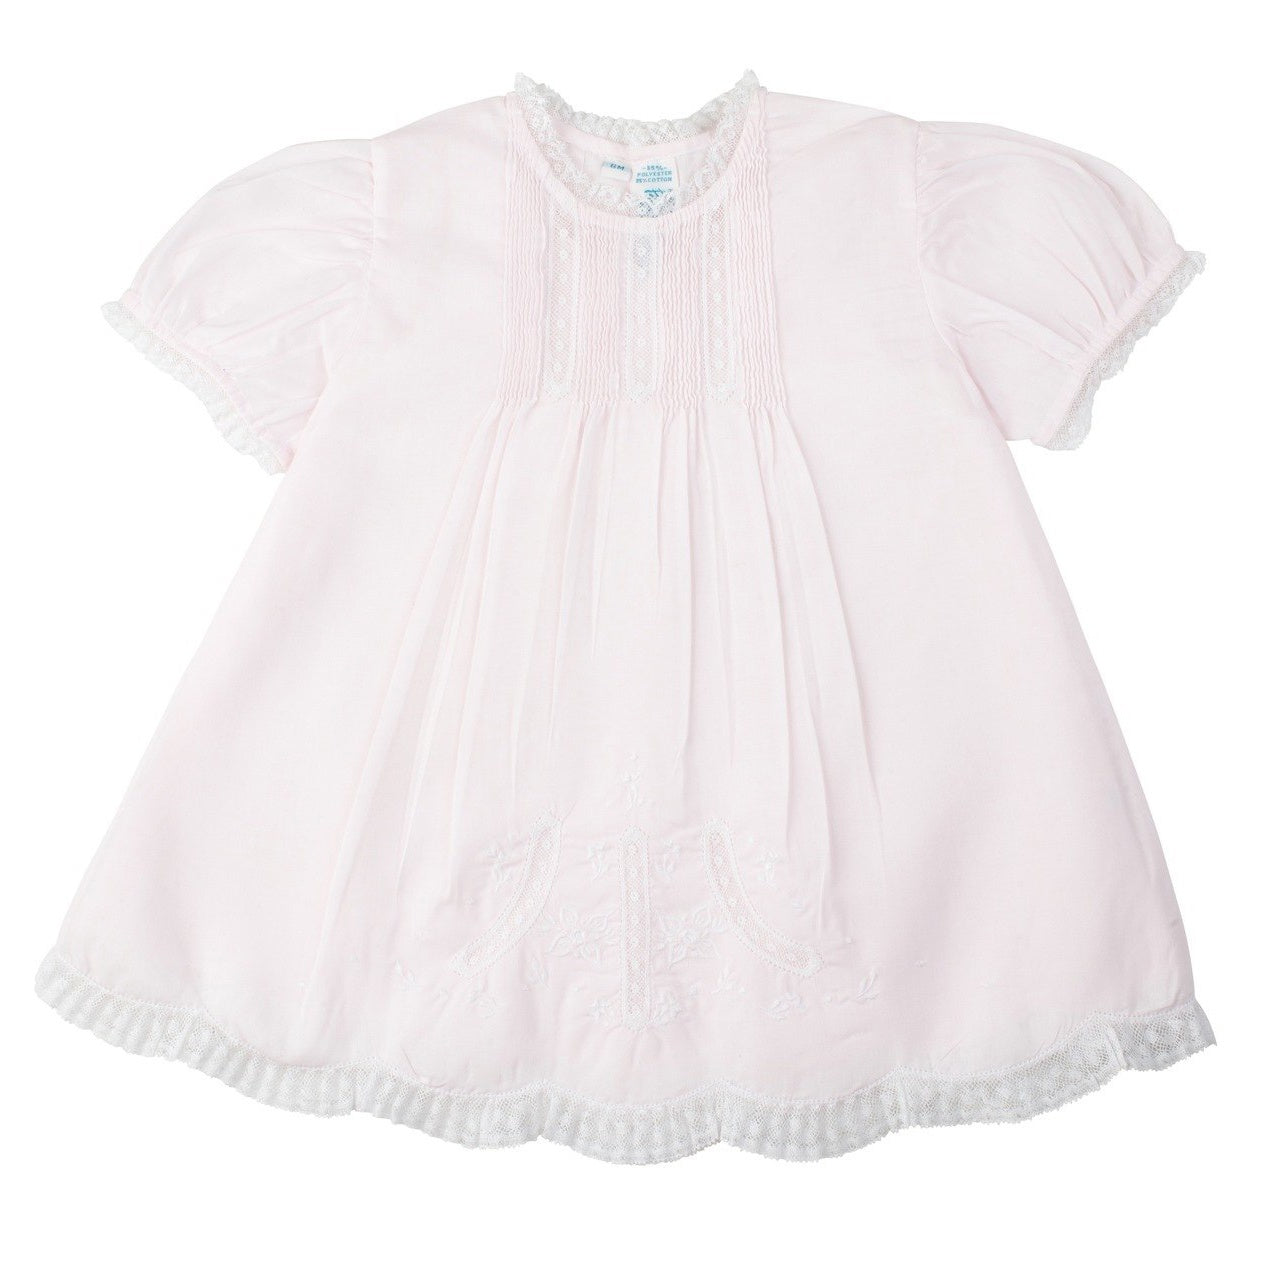 Feltman Brothers Lace Detail Infant Dress 6361